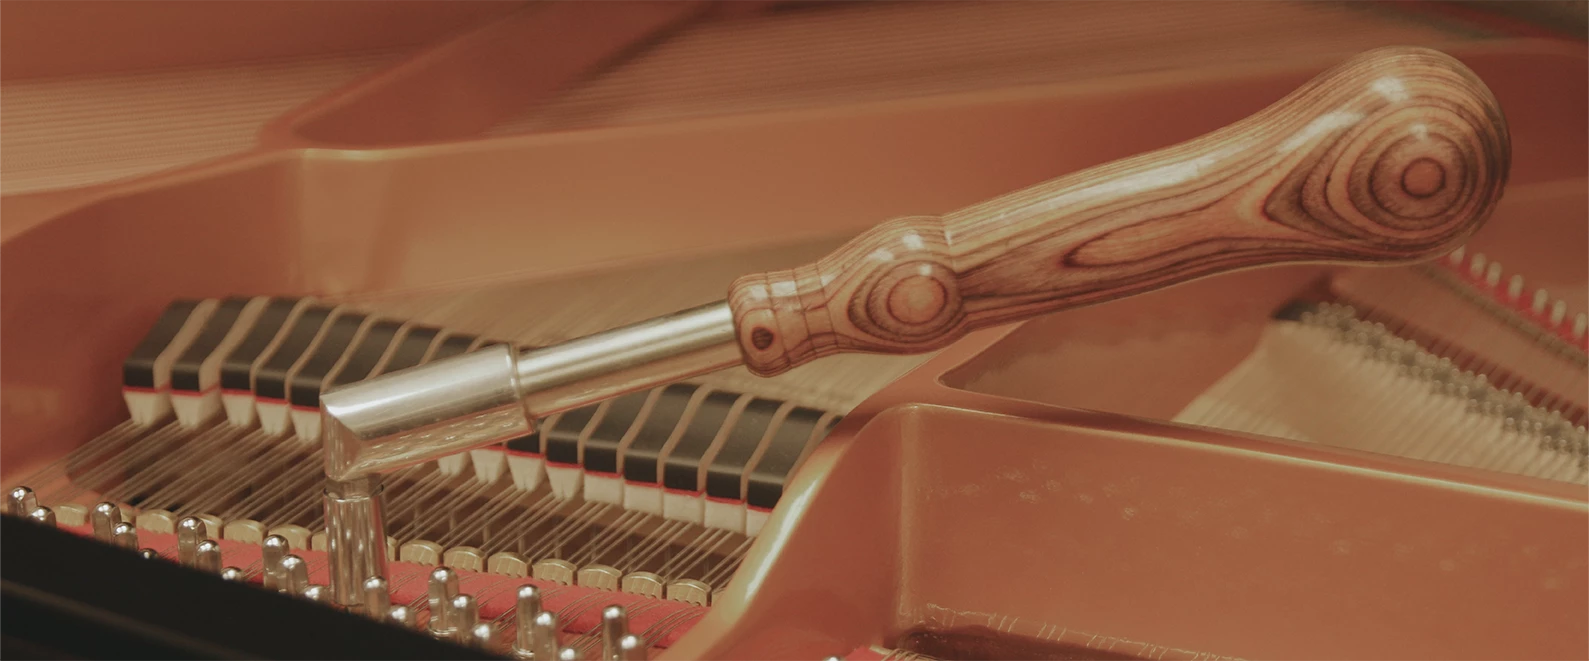 Une photo d'un outil pour accorder un piano, posé sur un mécanisme de piano.